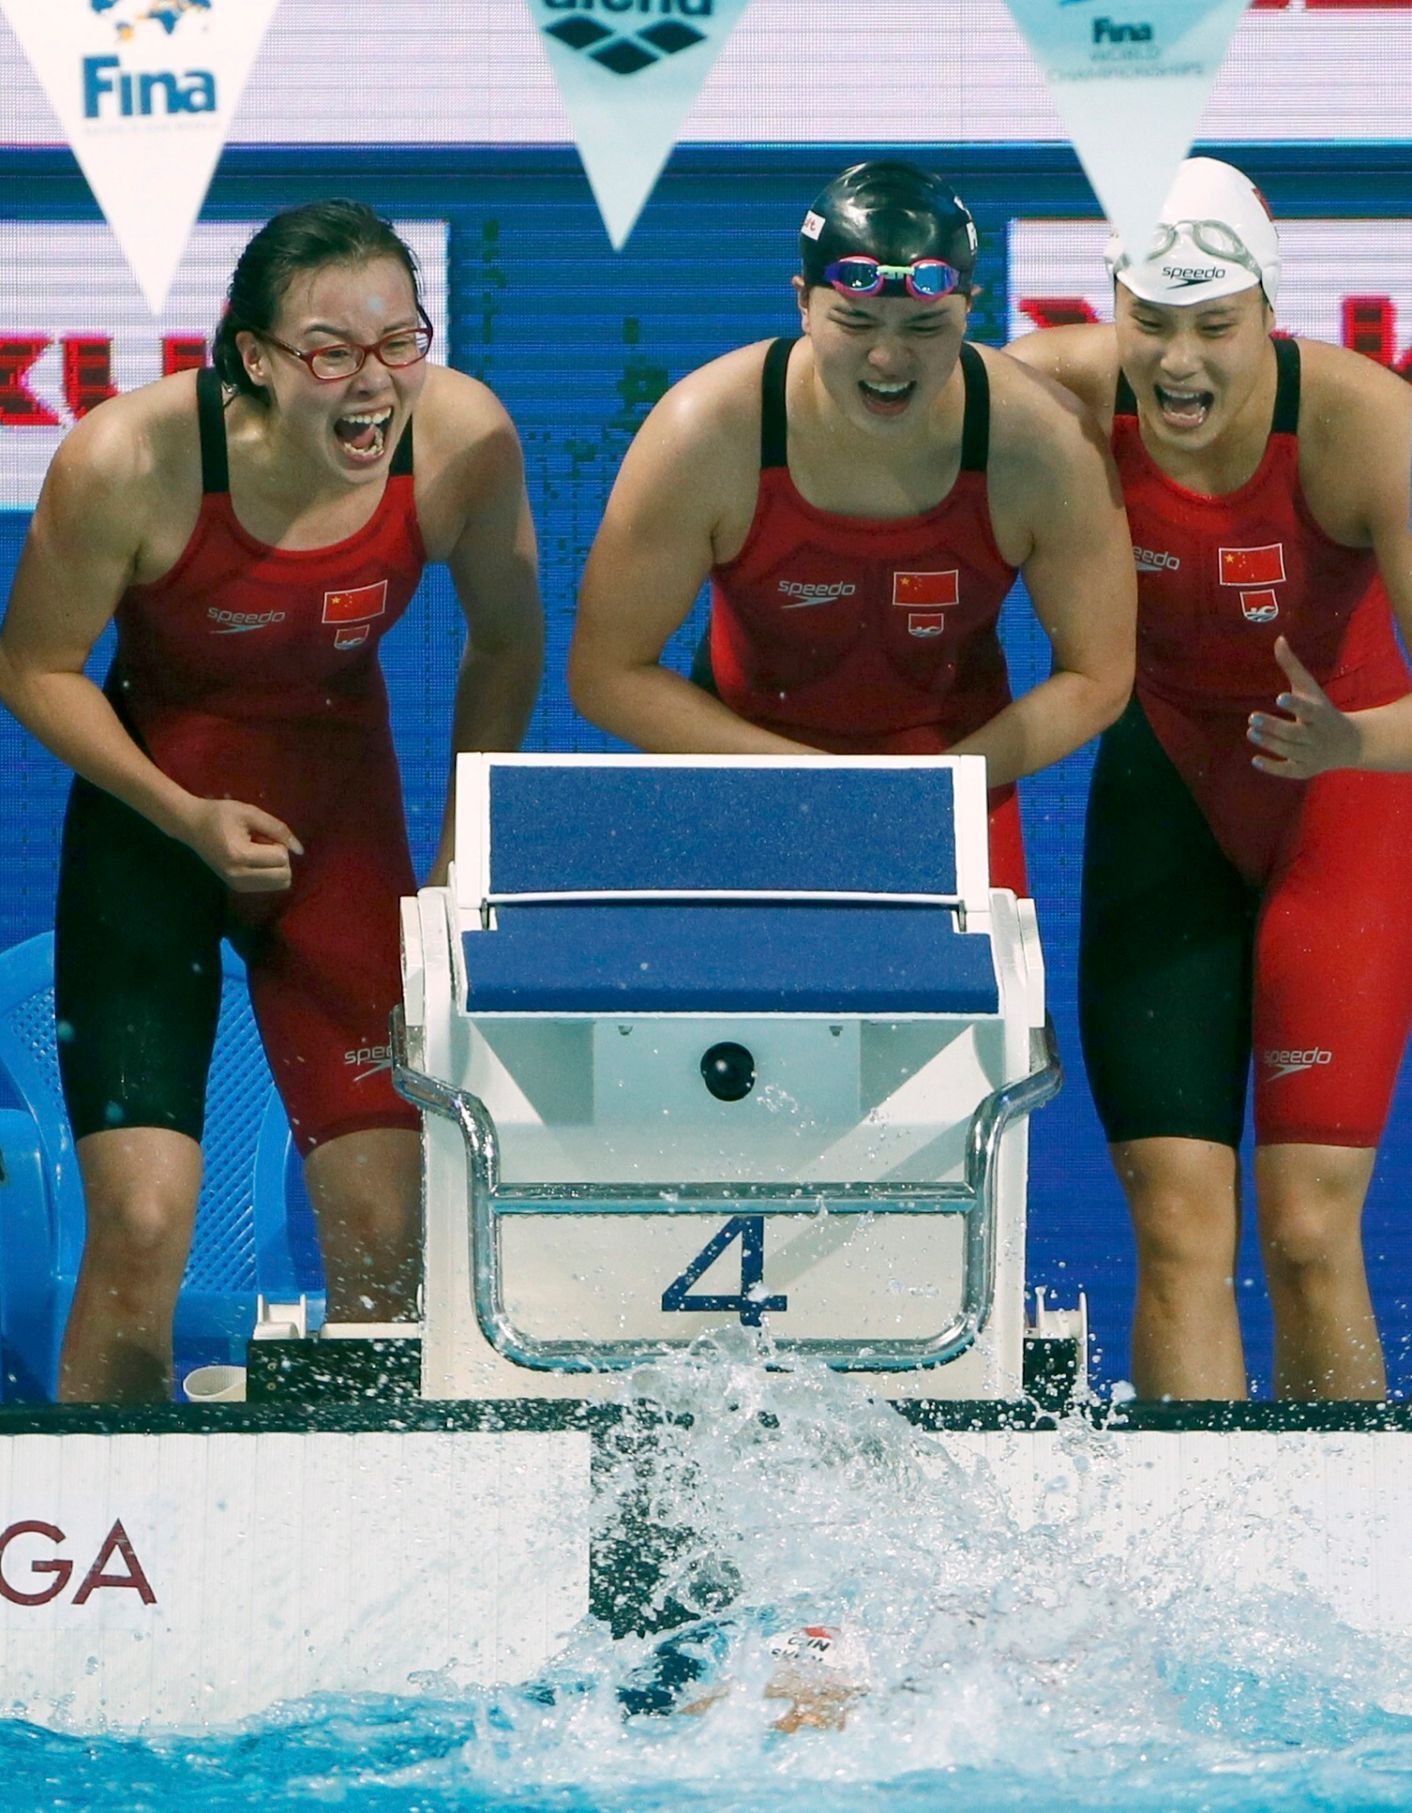 MS v plavání 2015: čínská štafeta na 4x100 m